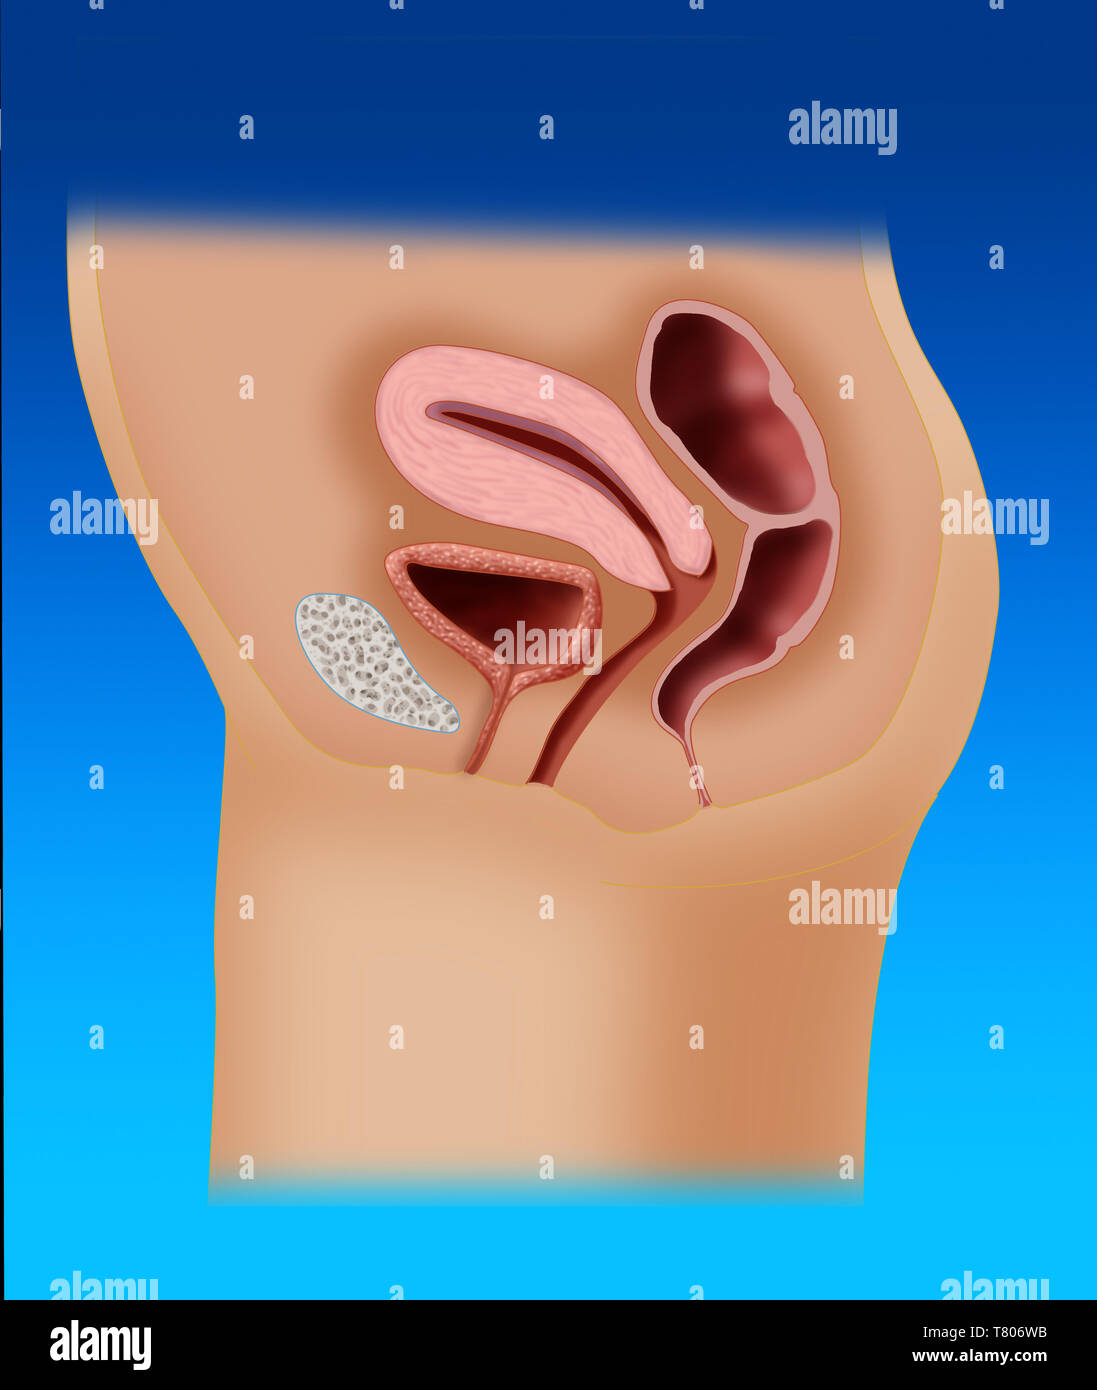 Female Reproductive Anatomy, Illustration Stock Photo